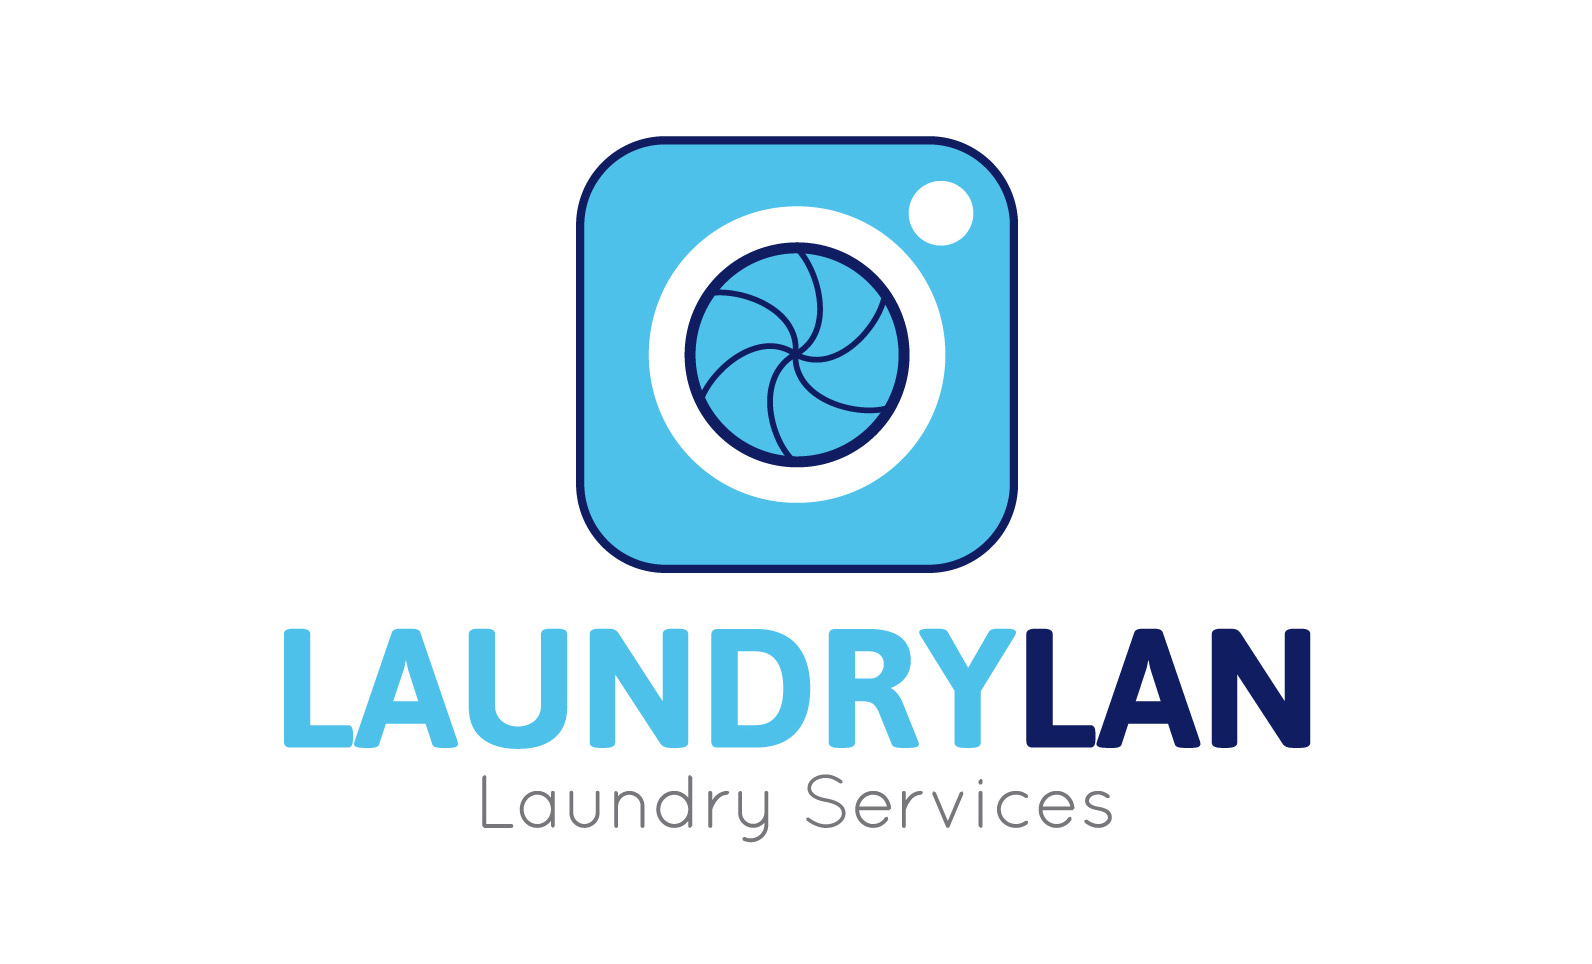 Laundrylan